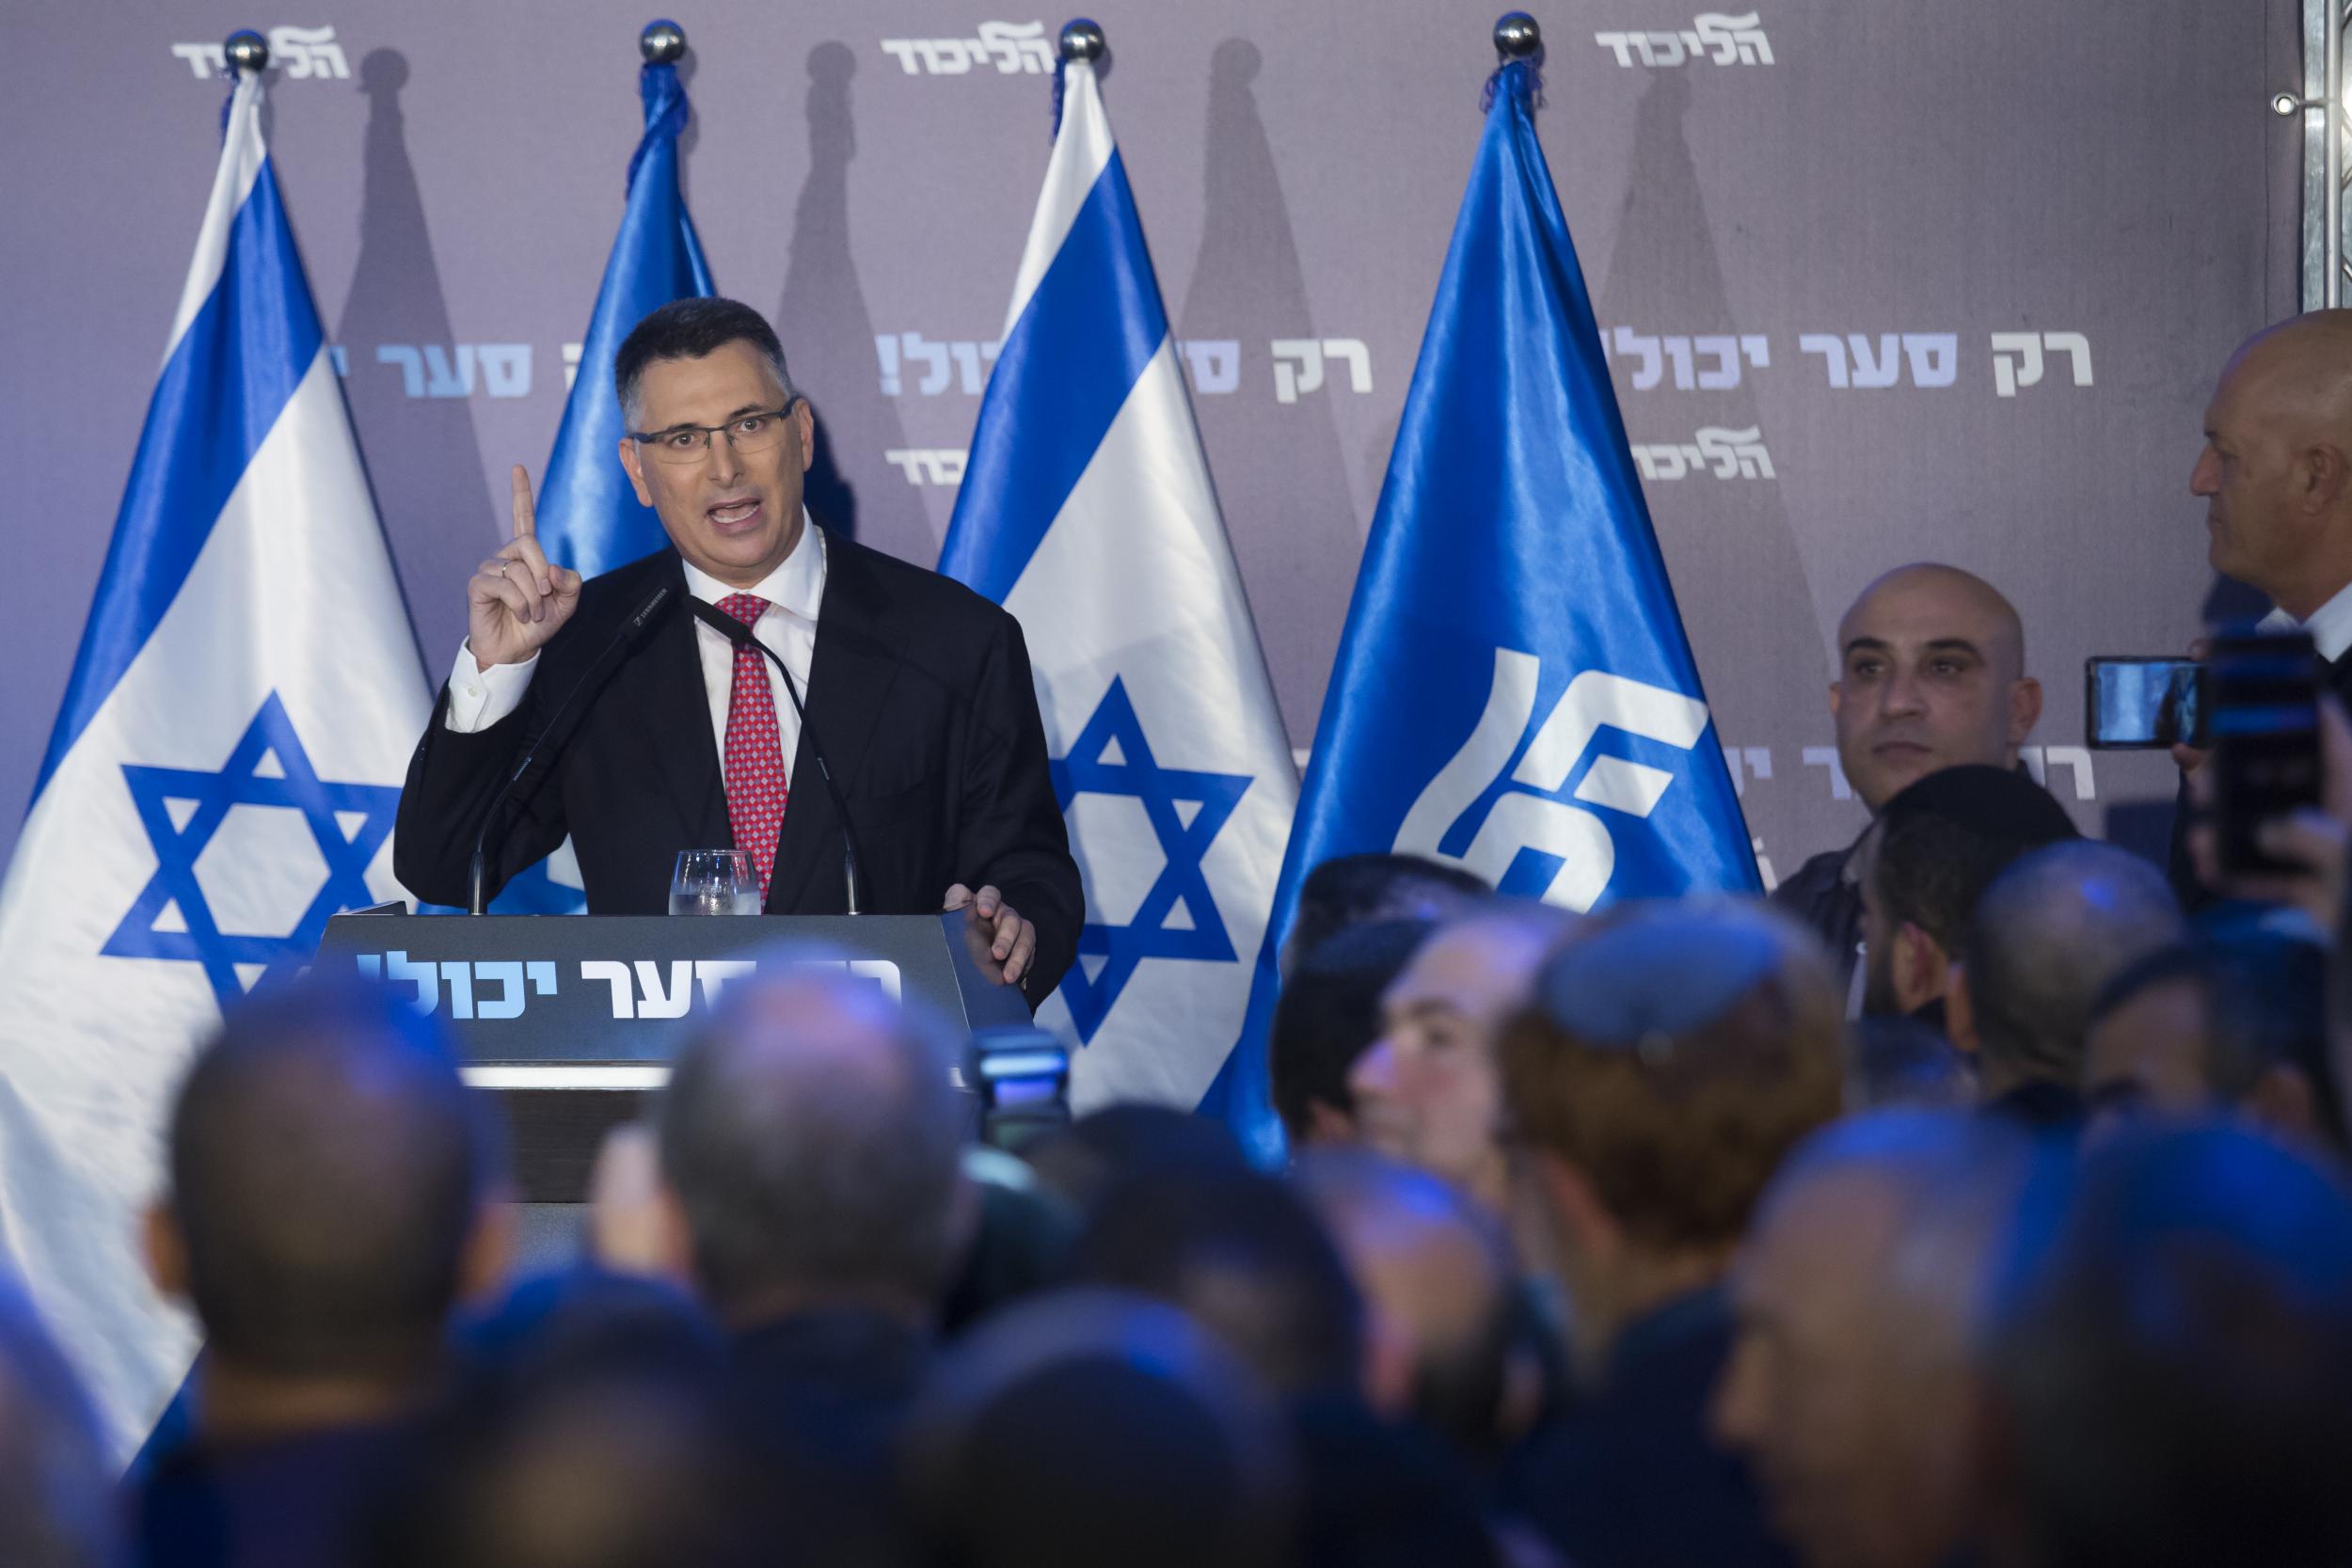 Gideon Saar, Likud Party member, speaks at a campaign rally in Or Yehuda ahead of party primaries (Getty)